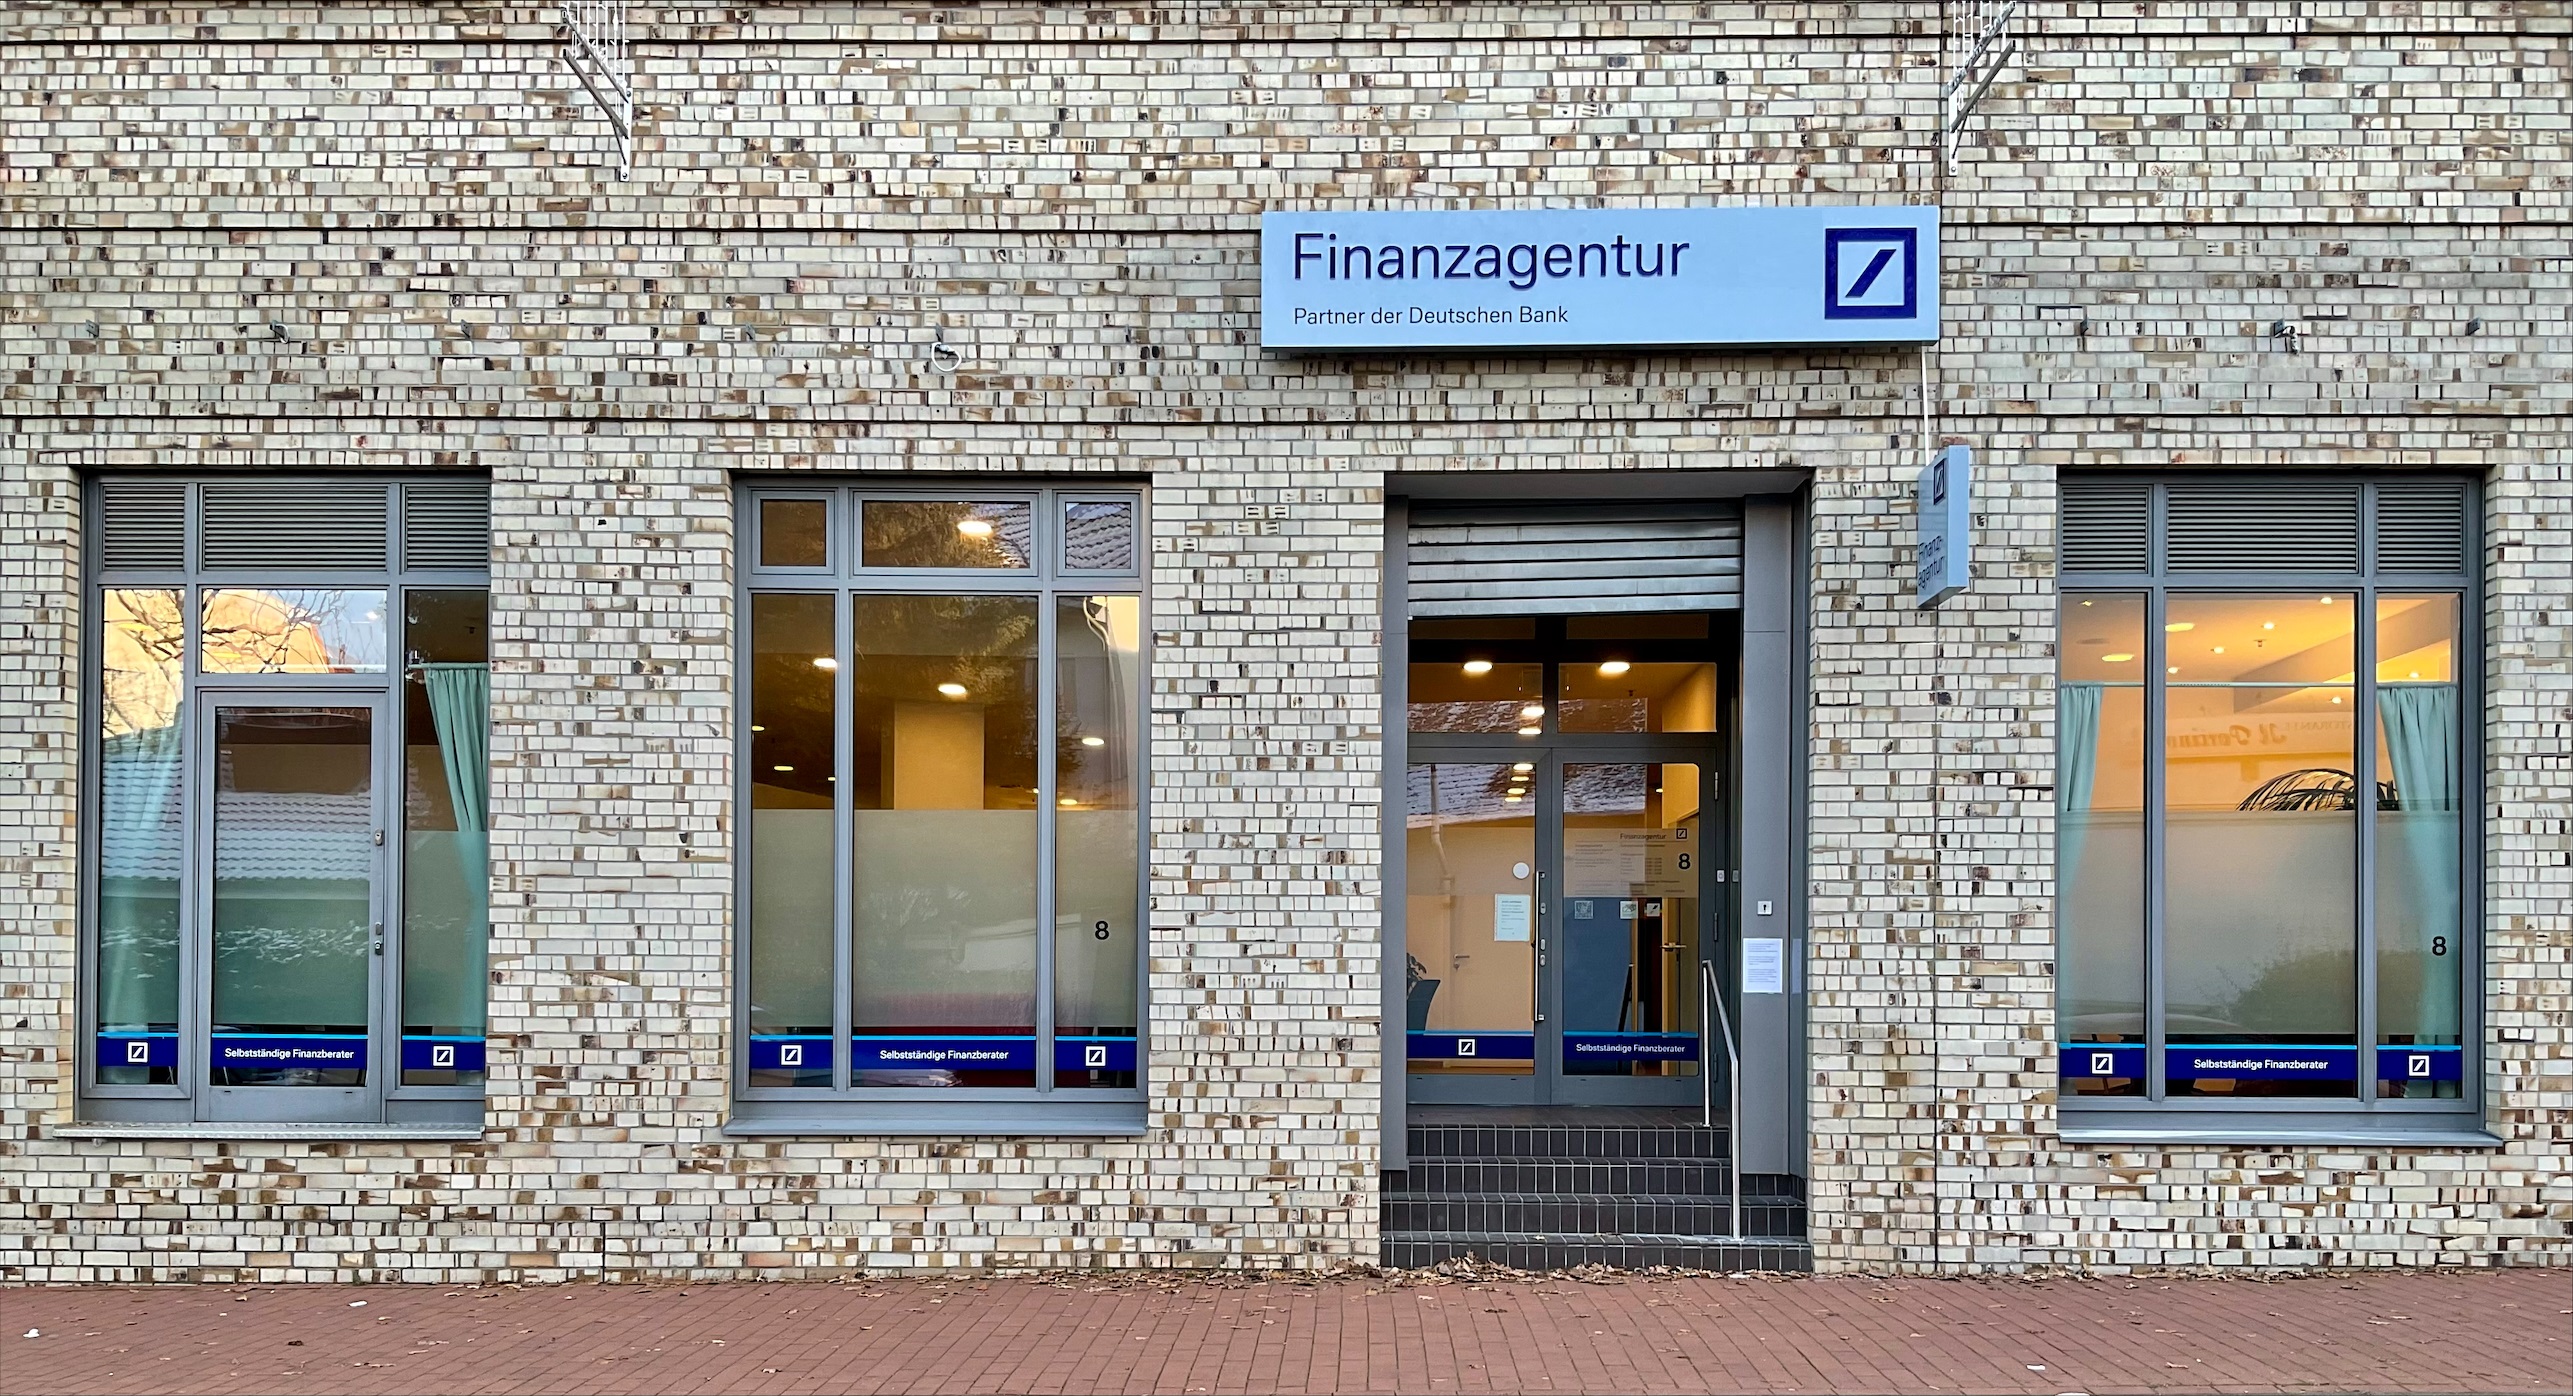 Bild der Finanzagentur - Partner der Deutschen Bank